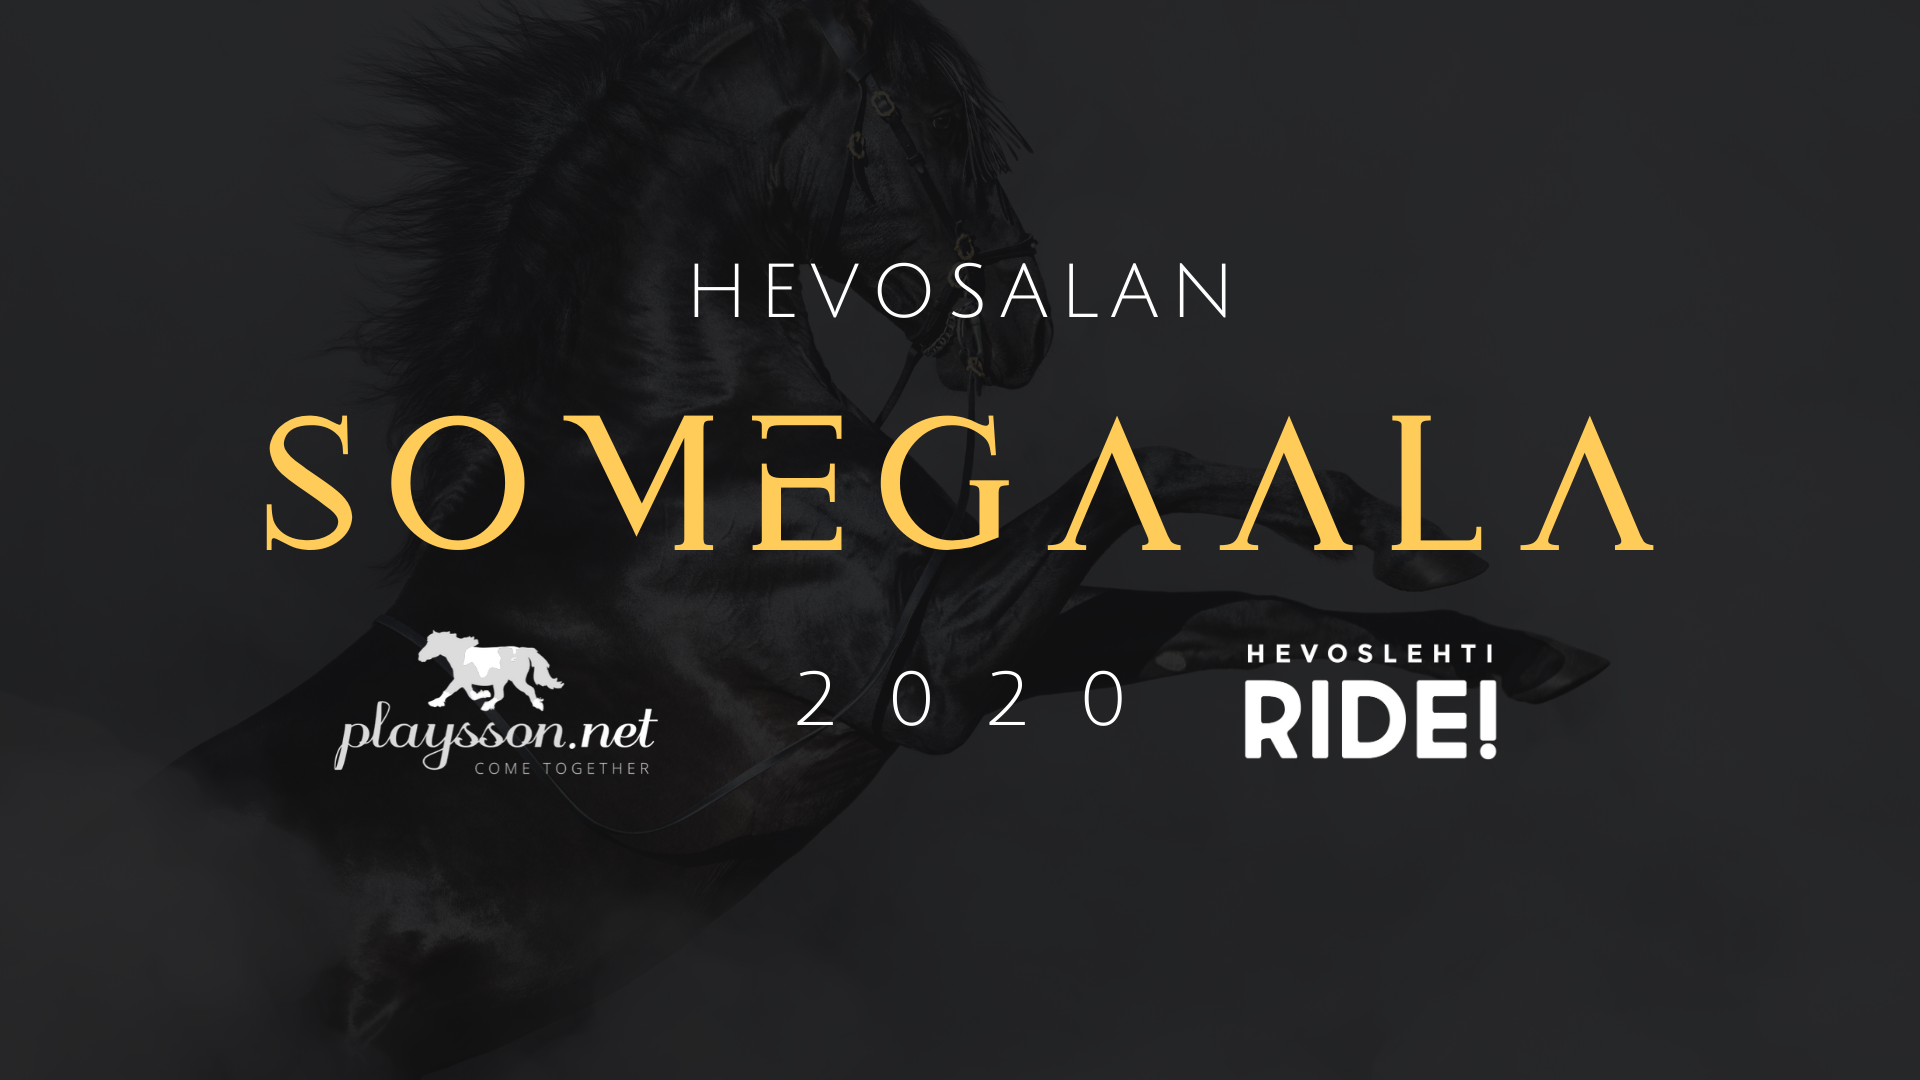 Hevosalan SomeGaala 2020 – Tutustu ehdokkaisiin!